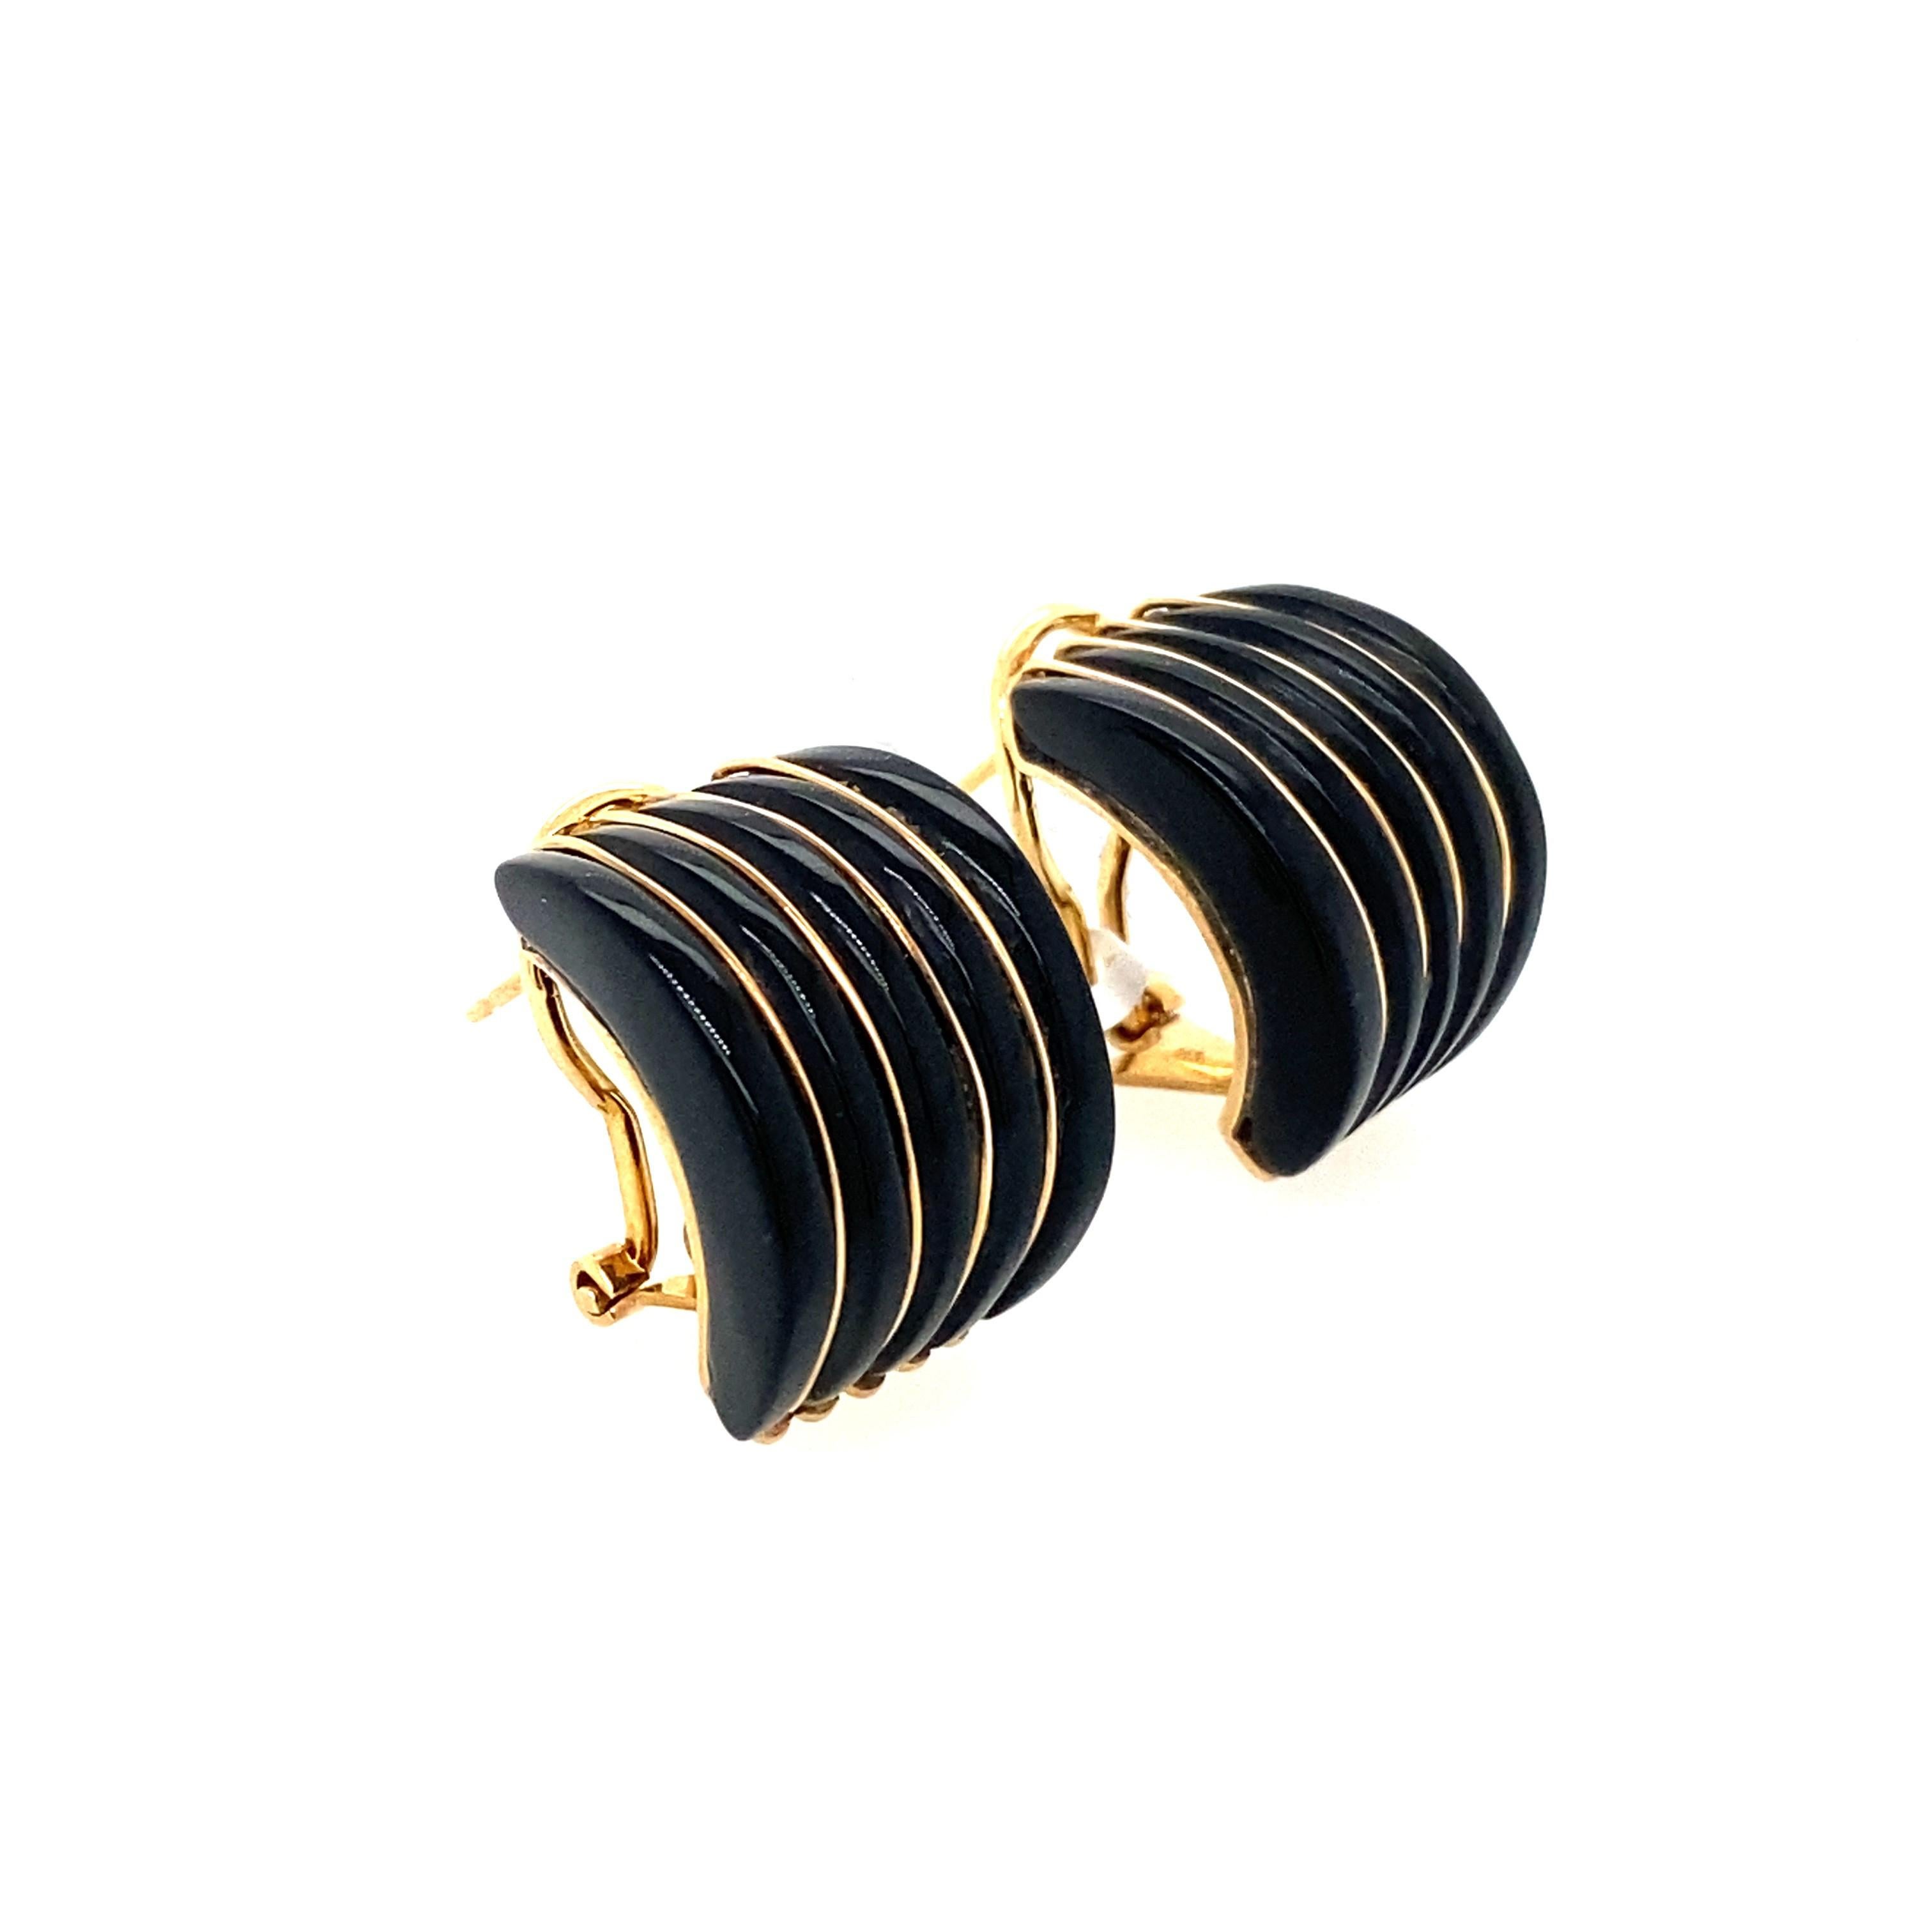 Vintage 14 karat yellow gold huggie hoop earring with black onyx.